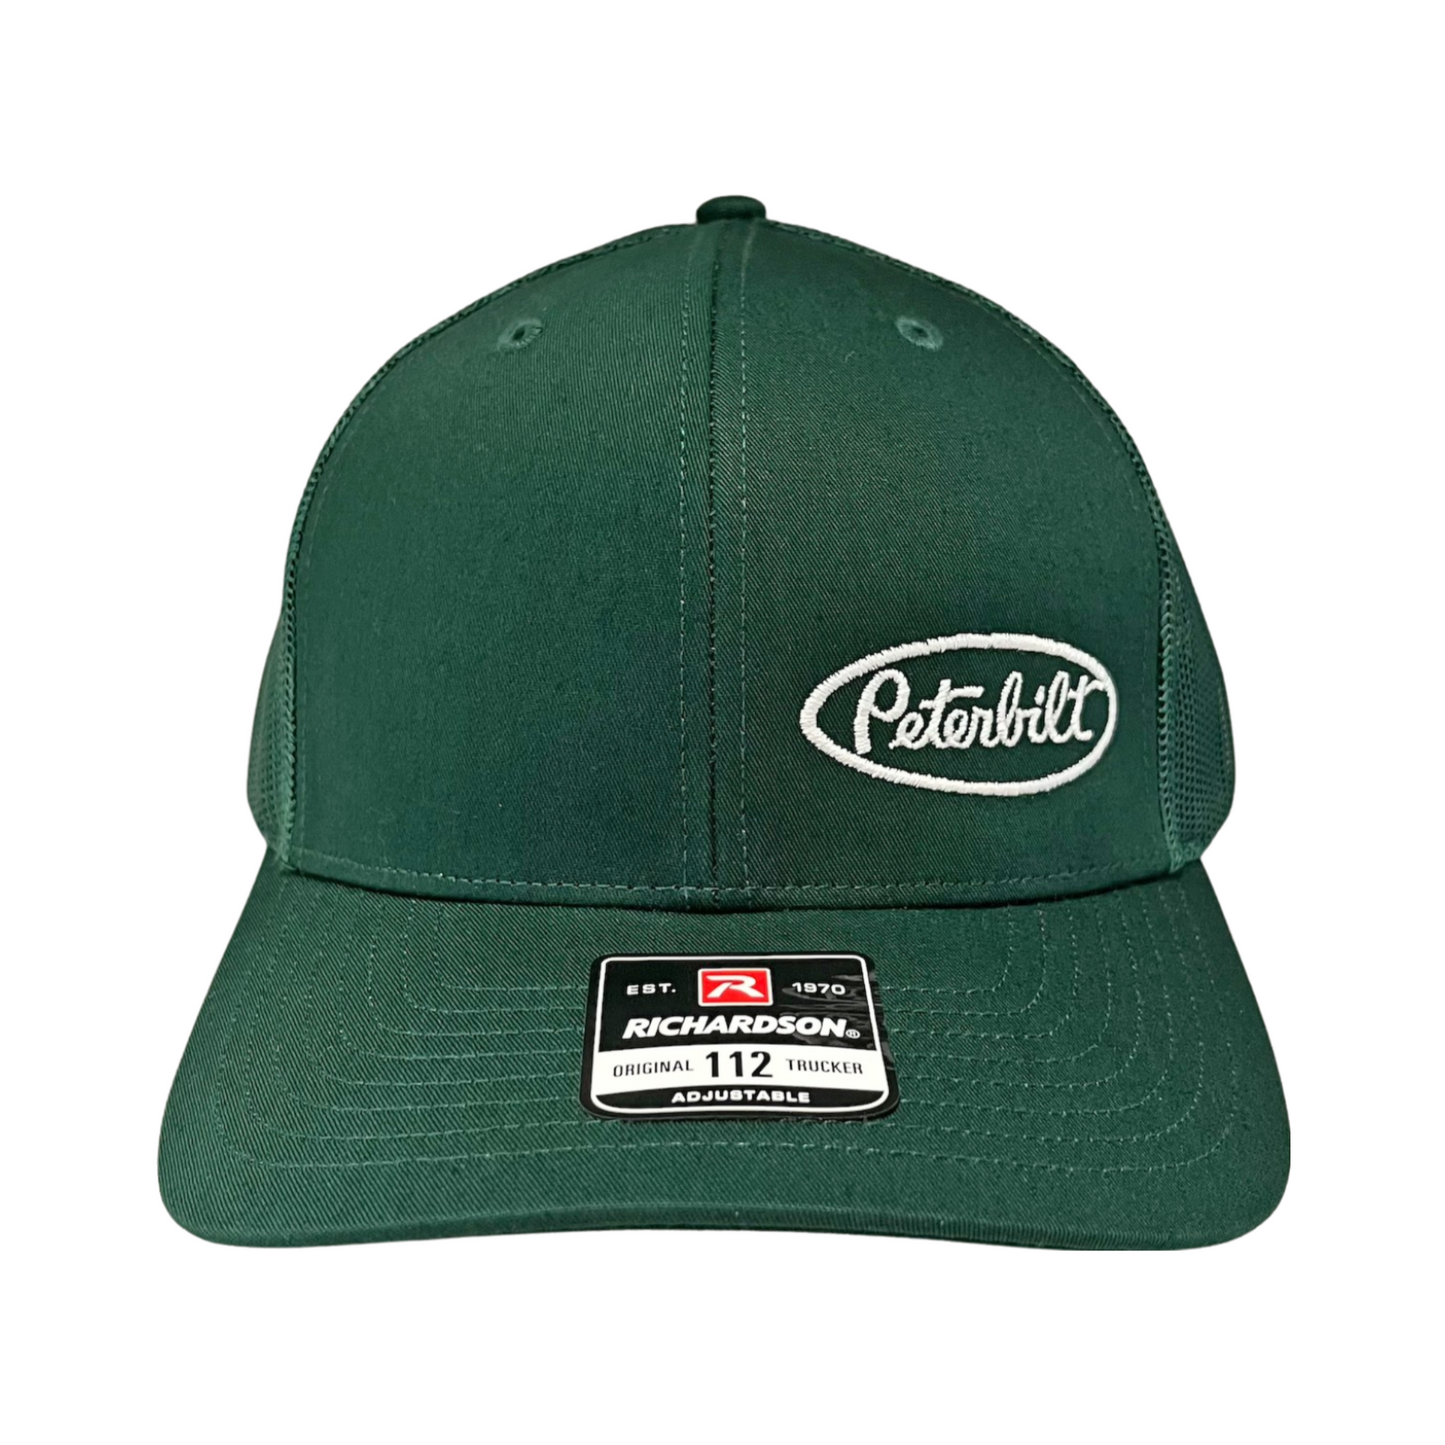 Classic Forest Green Peterbilt logo Trucker Cap